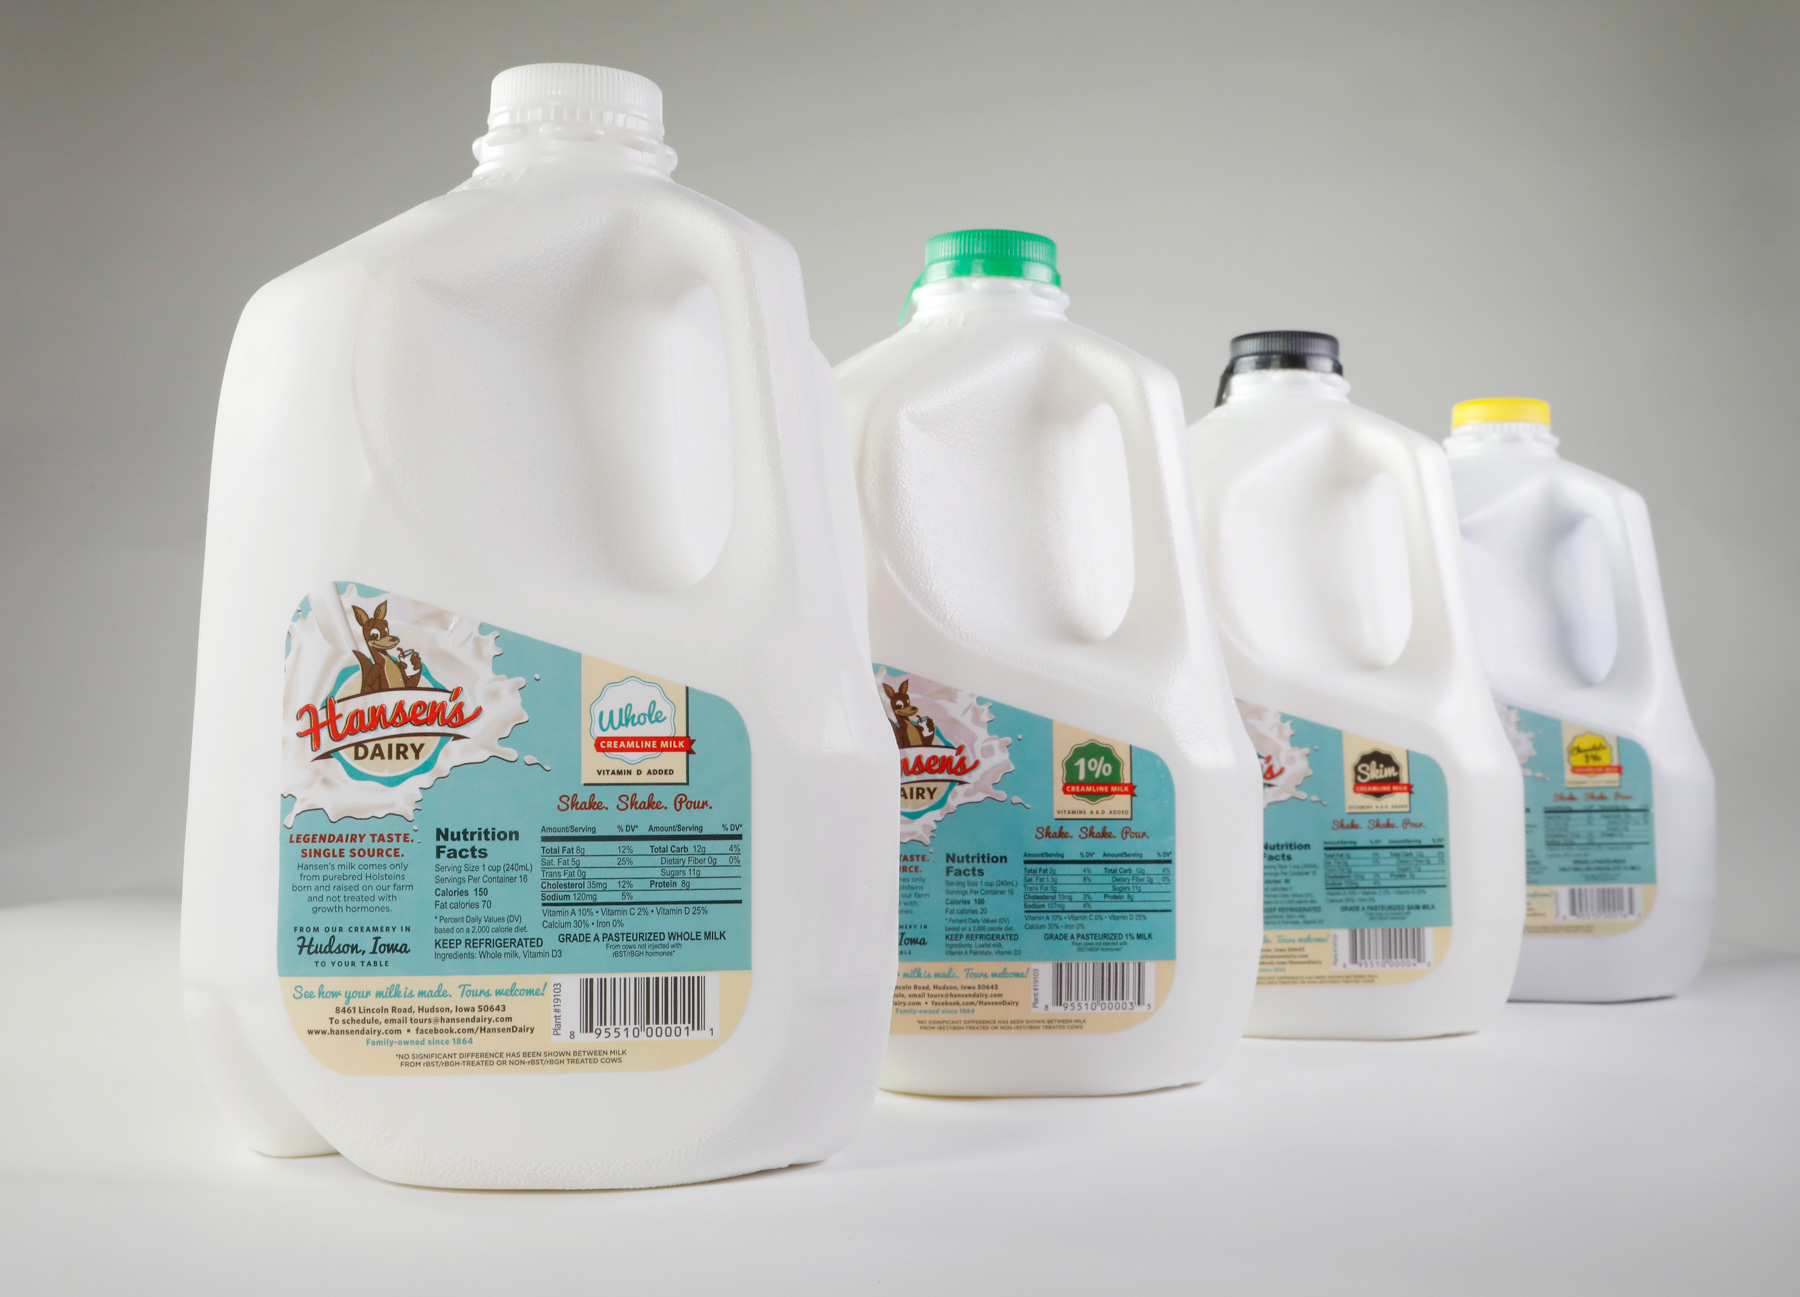 All milk jug sizes hansen's dairy